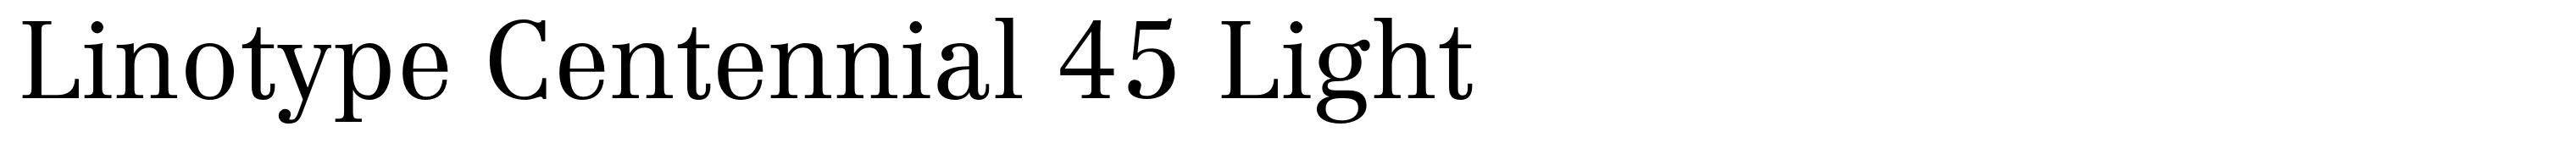 Linotype Centennial 45 Light